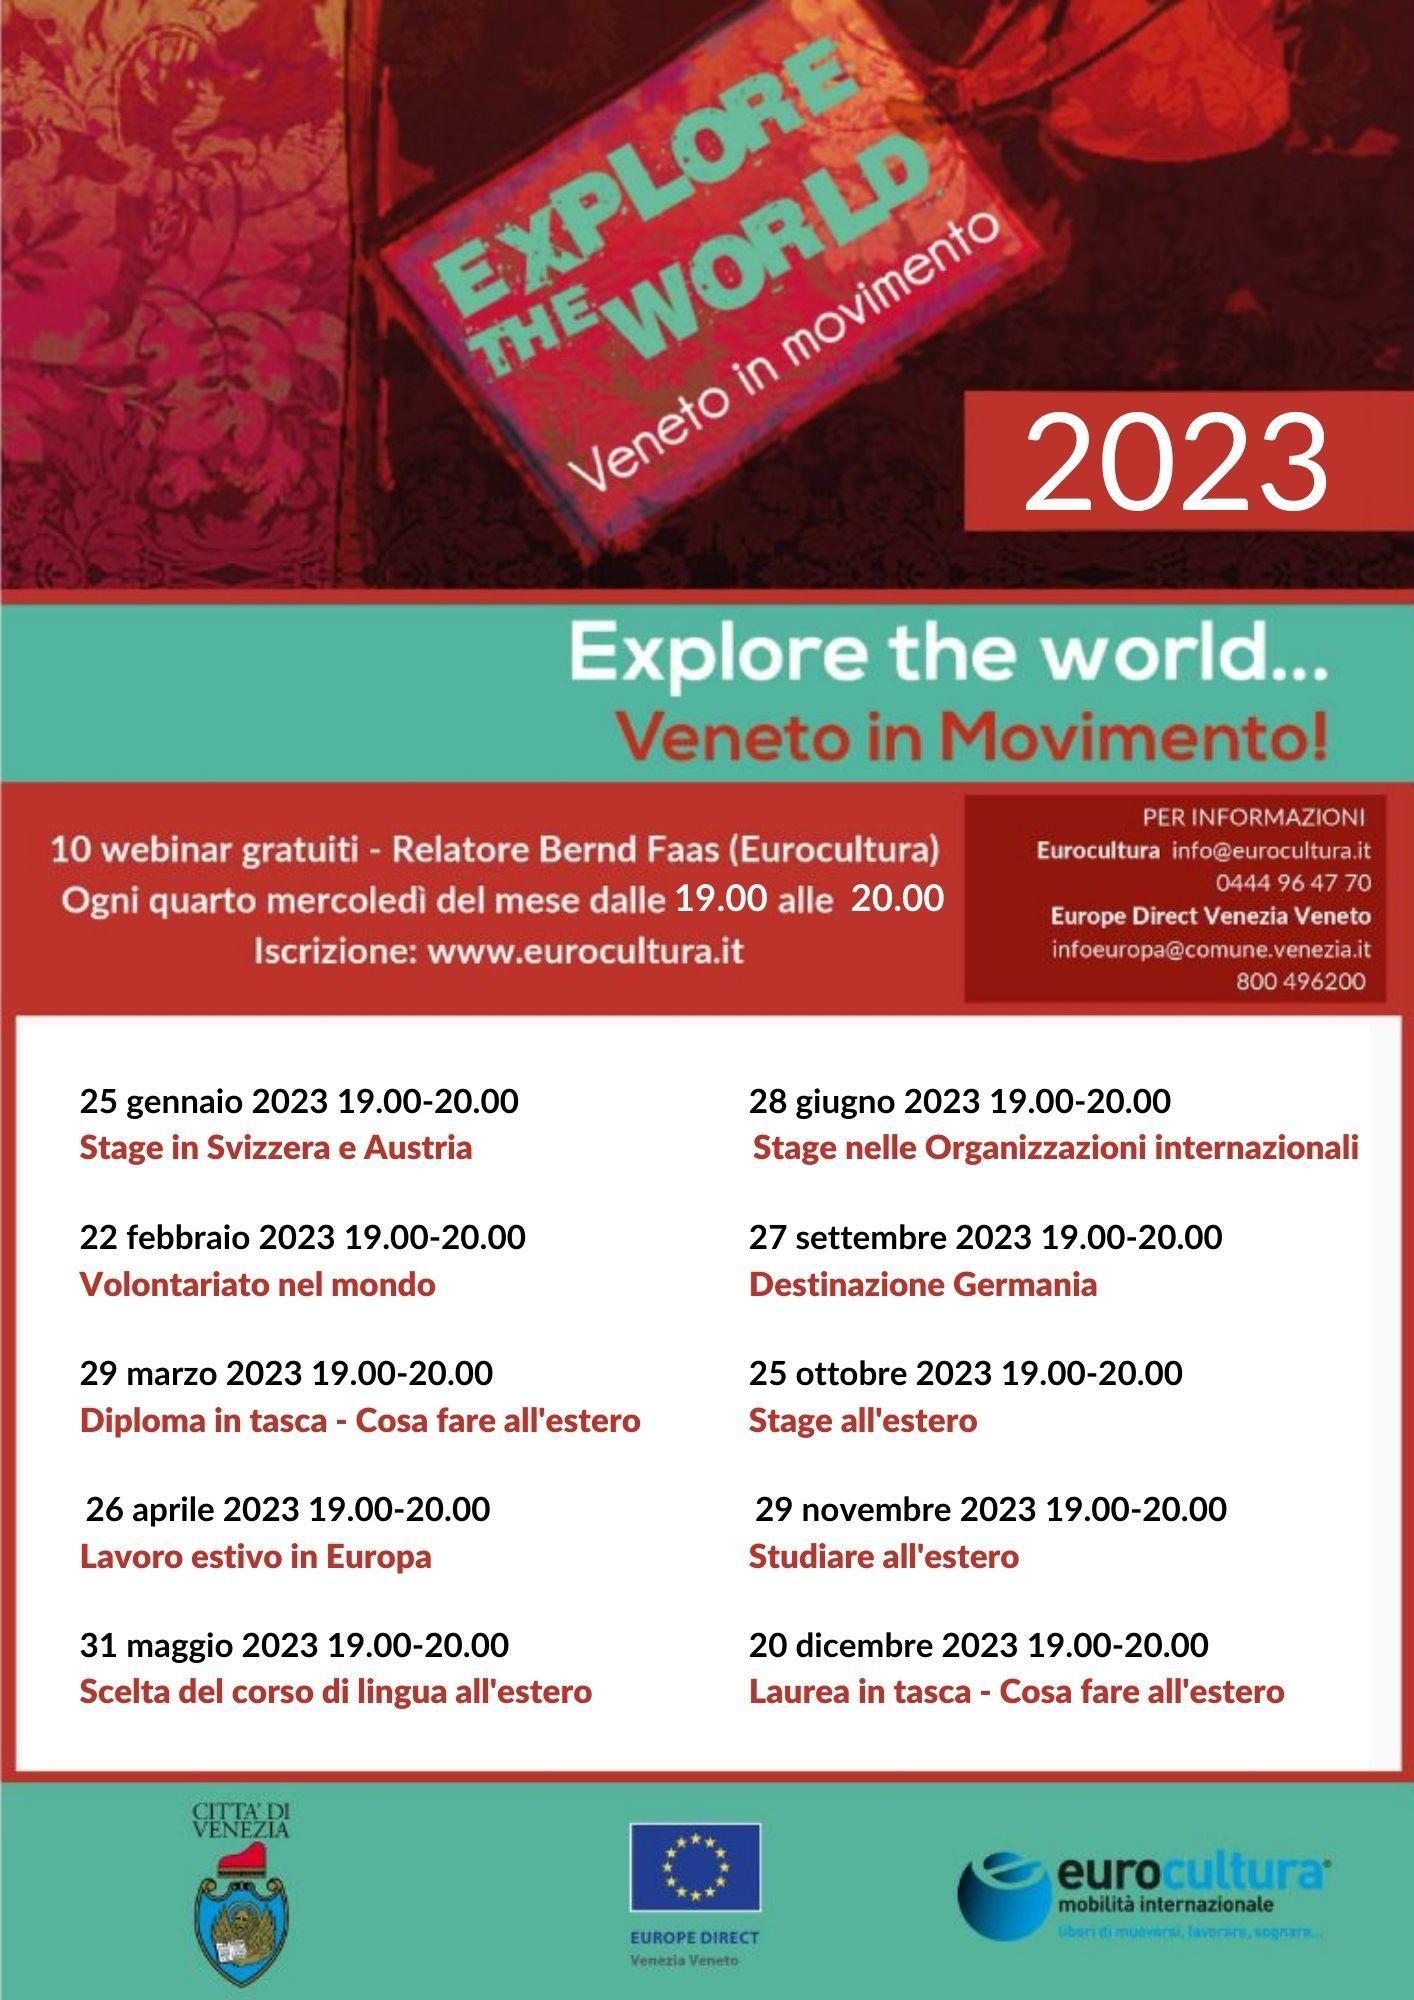 locandina explore the world 2023 loghi e calendario appuntamenti